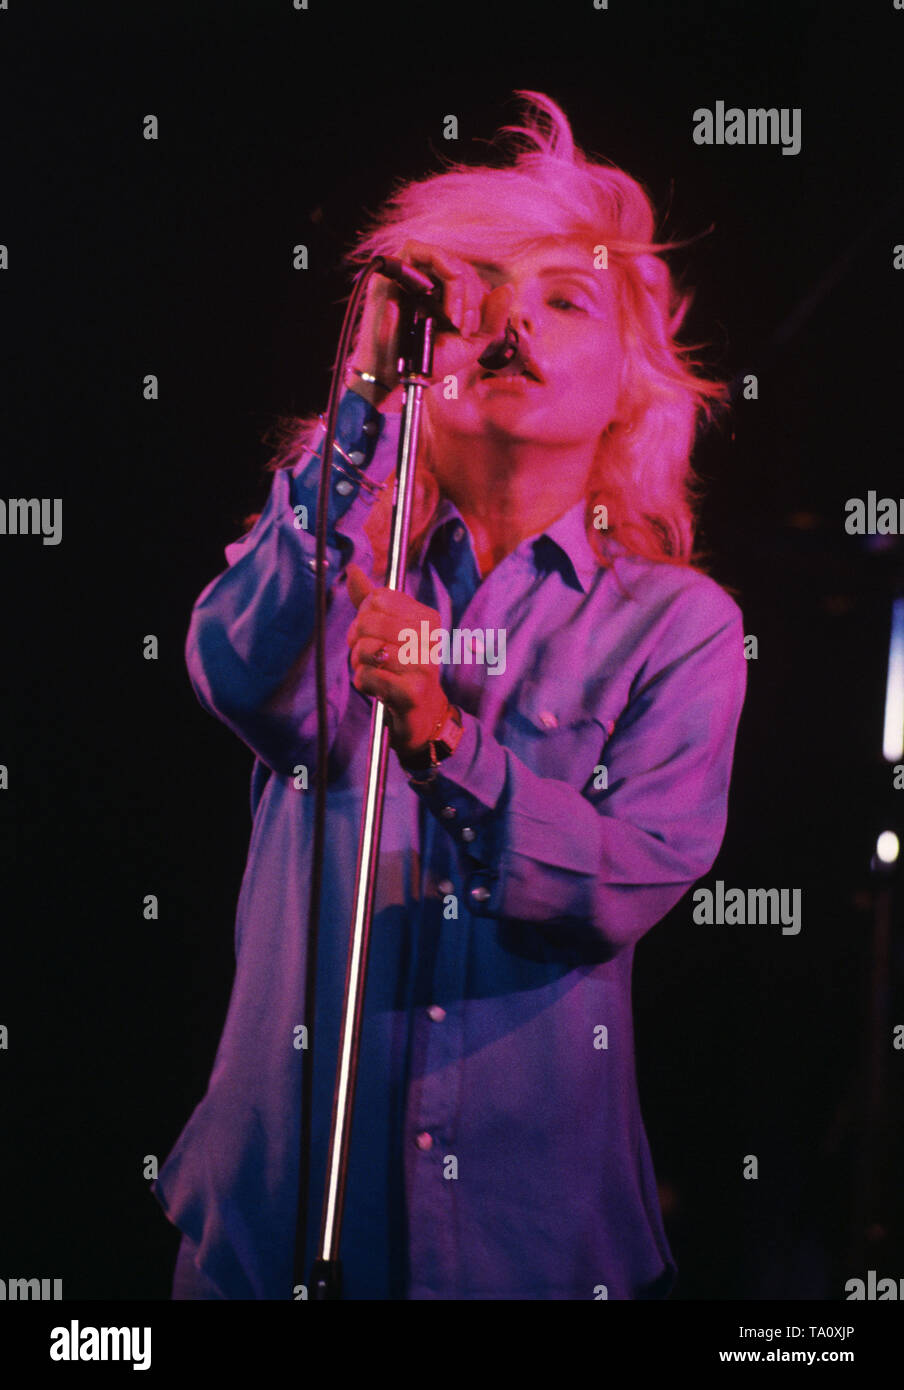 NIJMEGEN, Pays-Bas - 04 SEPTEMBRE : Debbie Harry de Blondie effectue live Vereeniging à Nimègue, aux Pays-Bas le 4 septembre 1978 (photo de Gijsbert Hanekroot) *** légende locale *** Debbie Harry de Blondie Banque D'Images